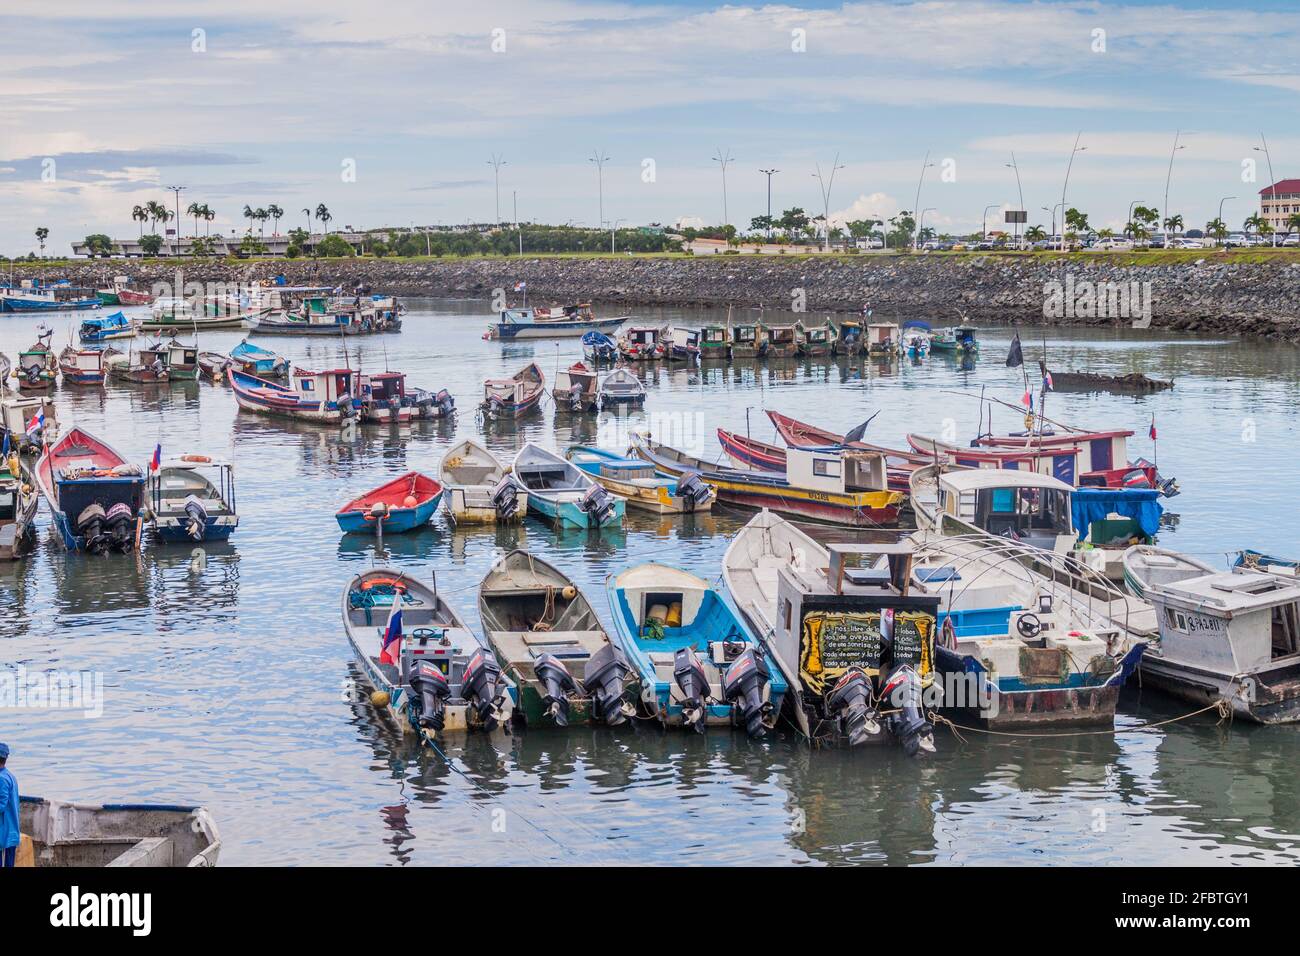 PANAMA-STADT, PANAMA - 30. MAI 2016: Fischerboote in einem Hafen von Panama-Stadt Stockfoto